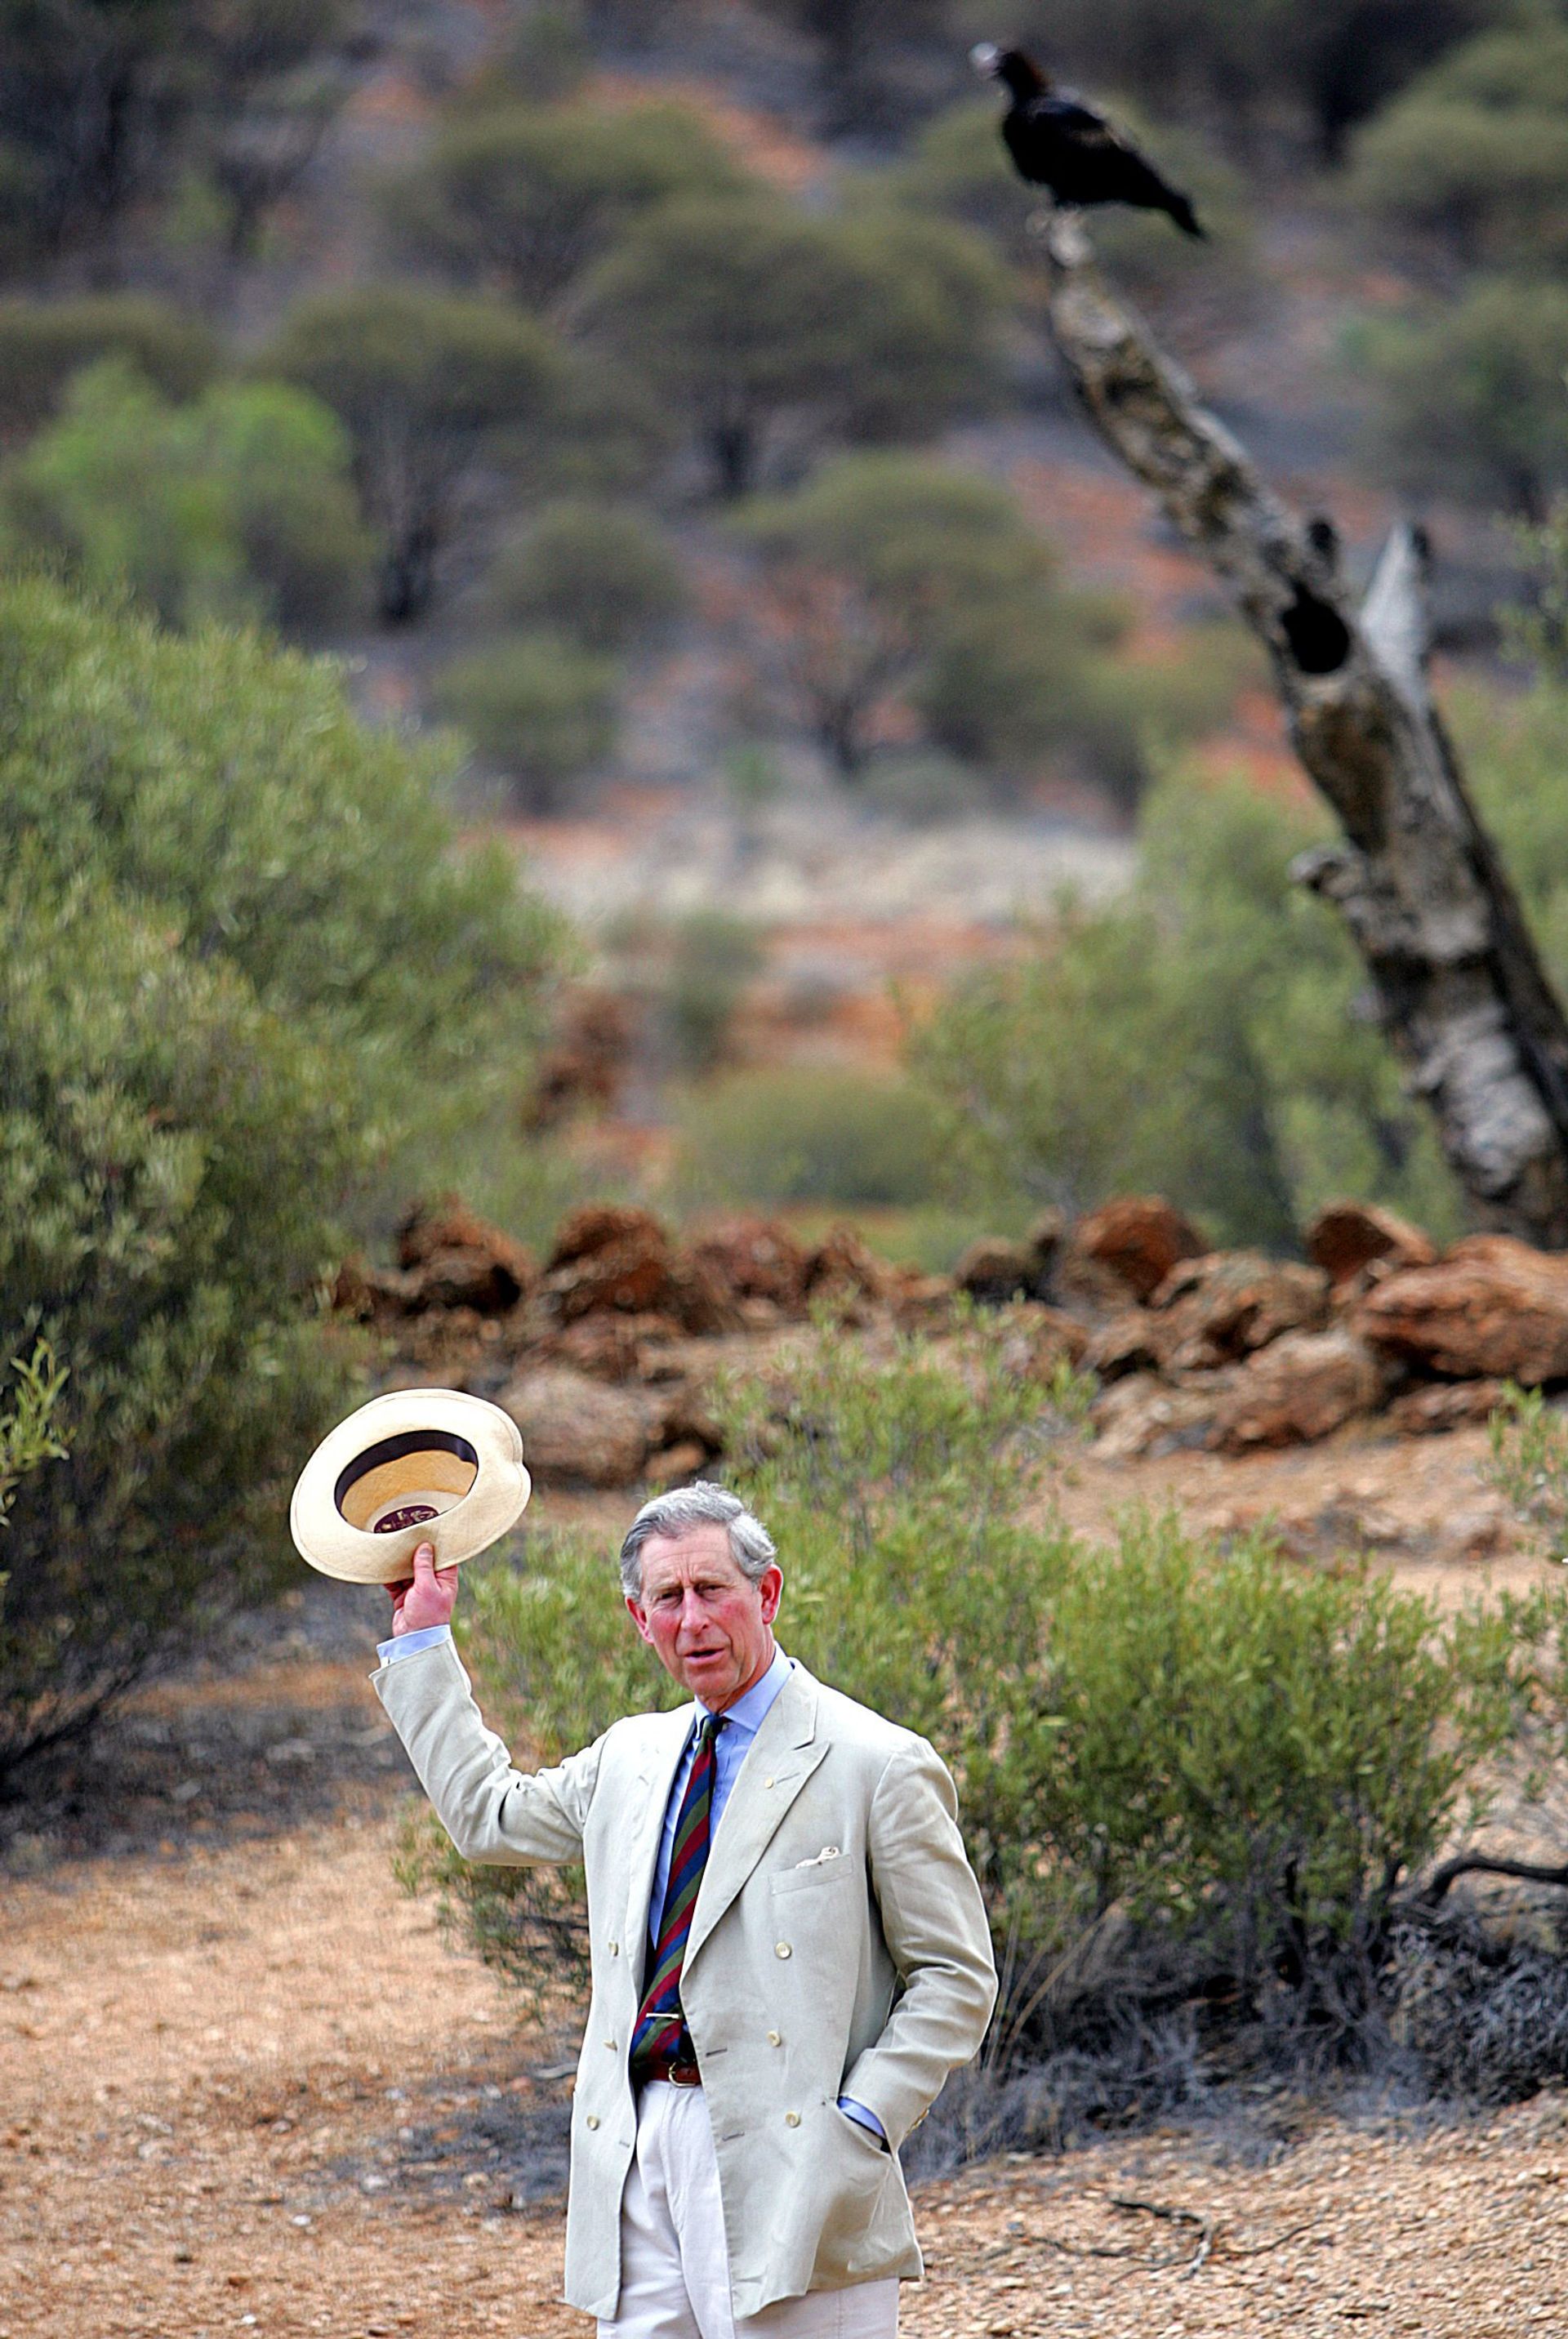 De toenmalige prins Charles op bezoek in Australië in 2005.